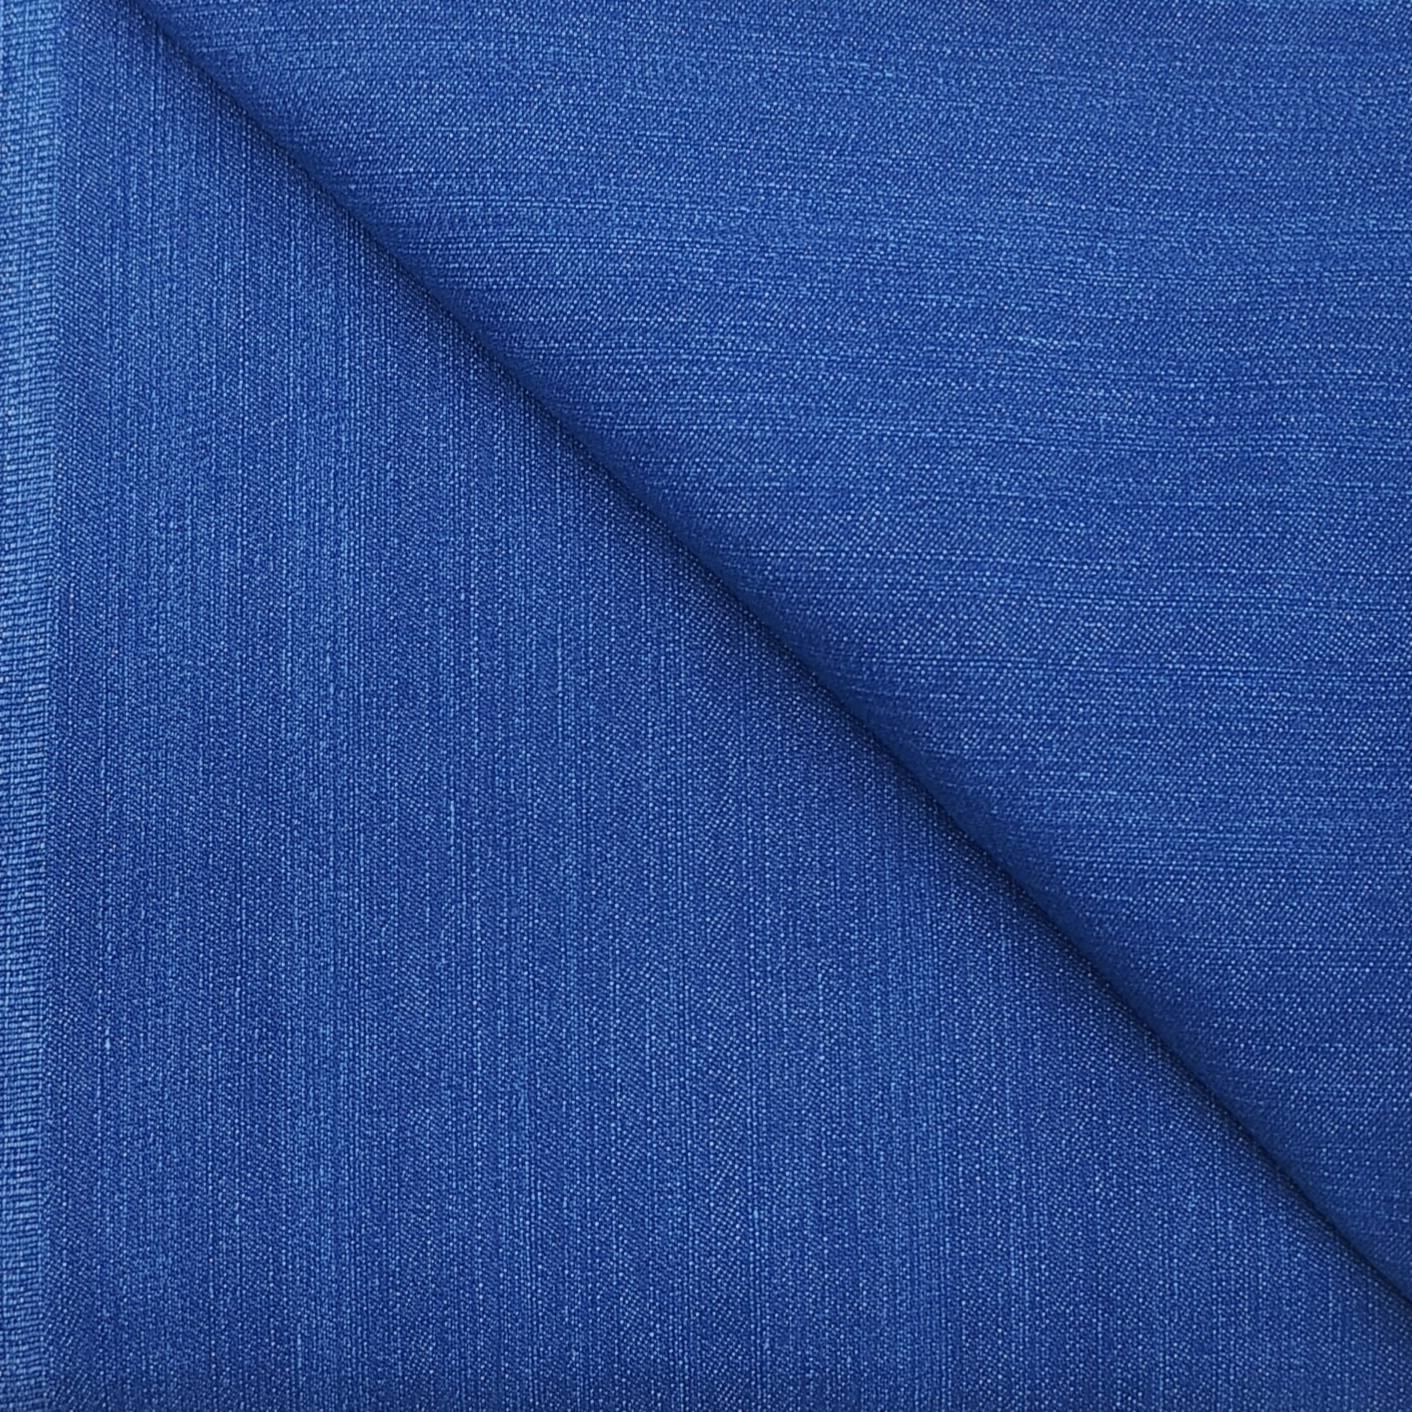 Arvind cotton denim stretchable jeans fabric colour Firoza blue